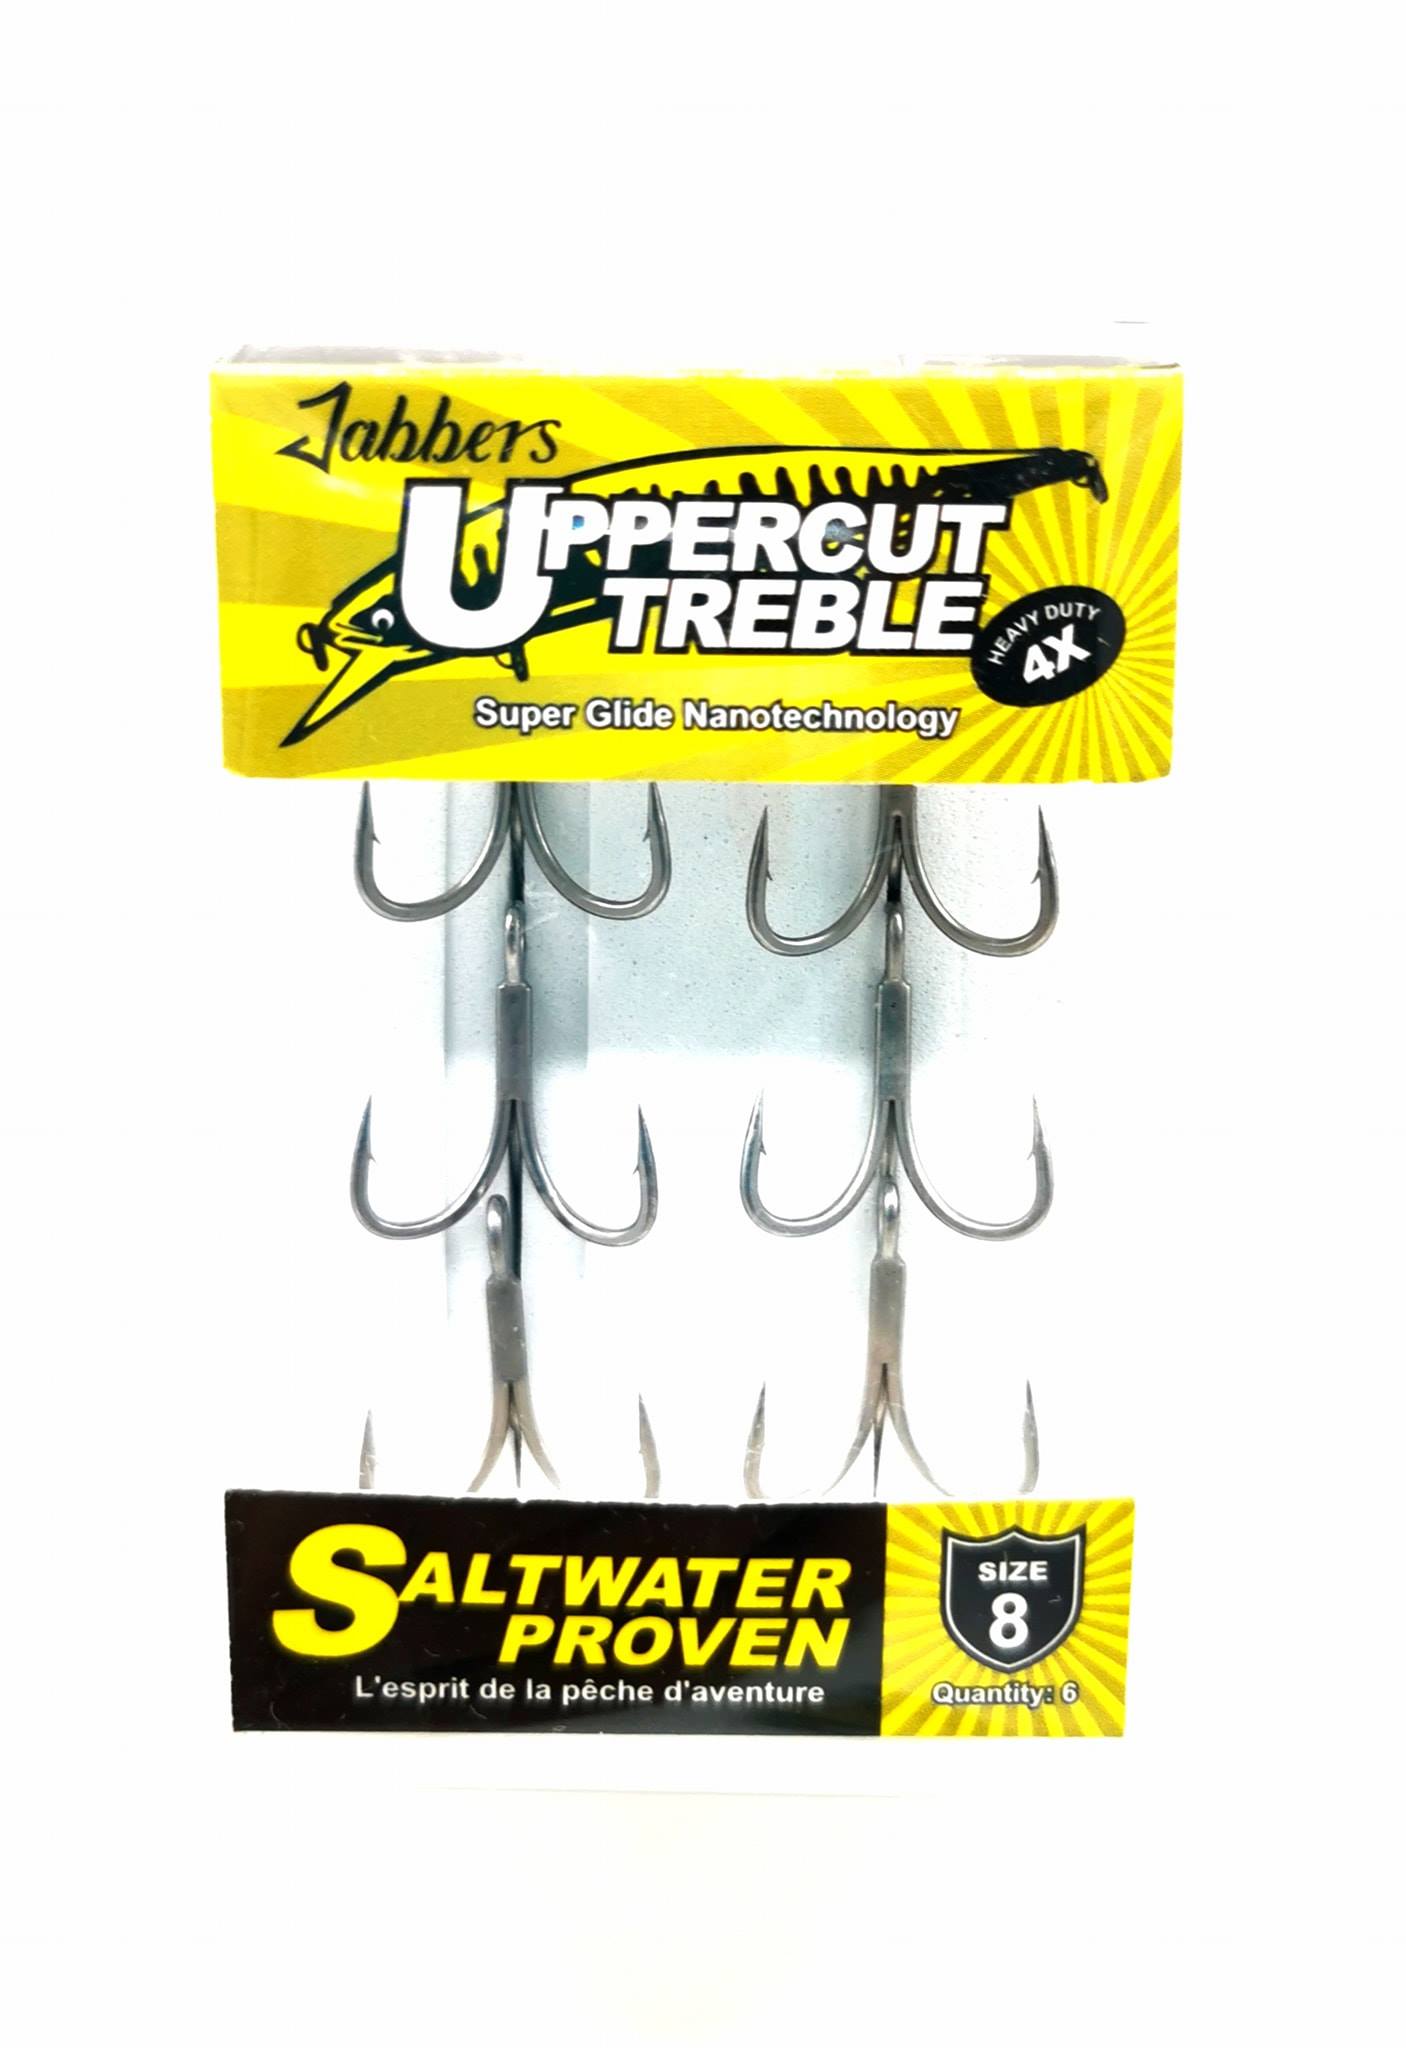 Jabbers Uppercut treble hooks – jabbers-fishing